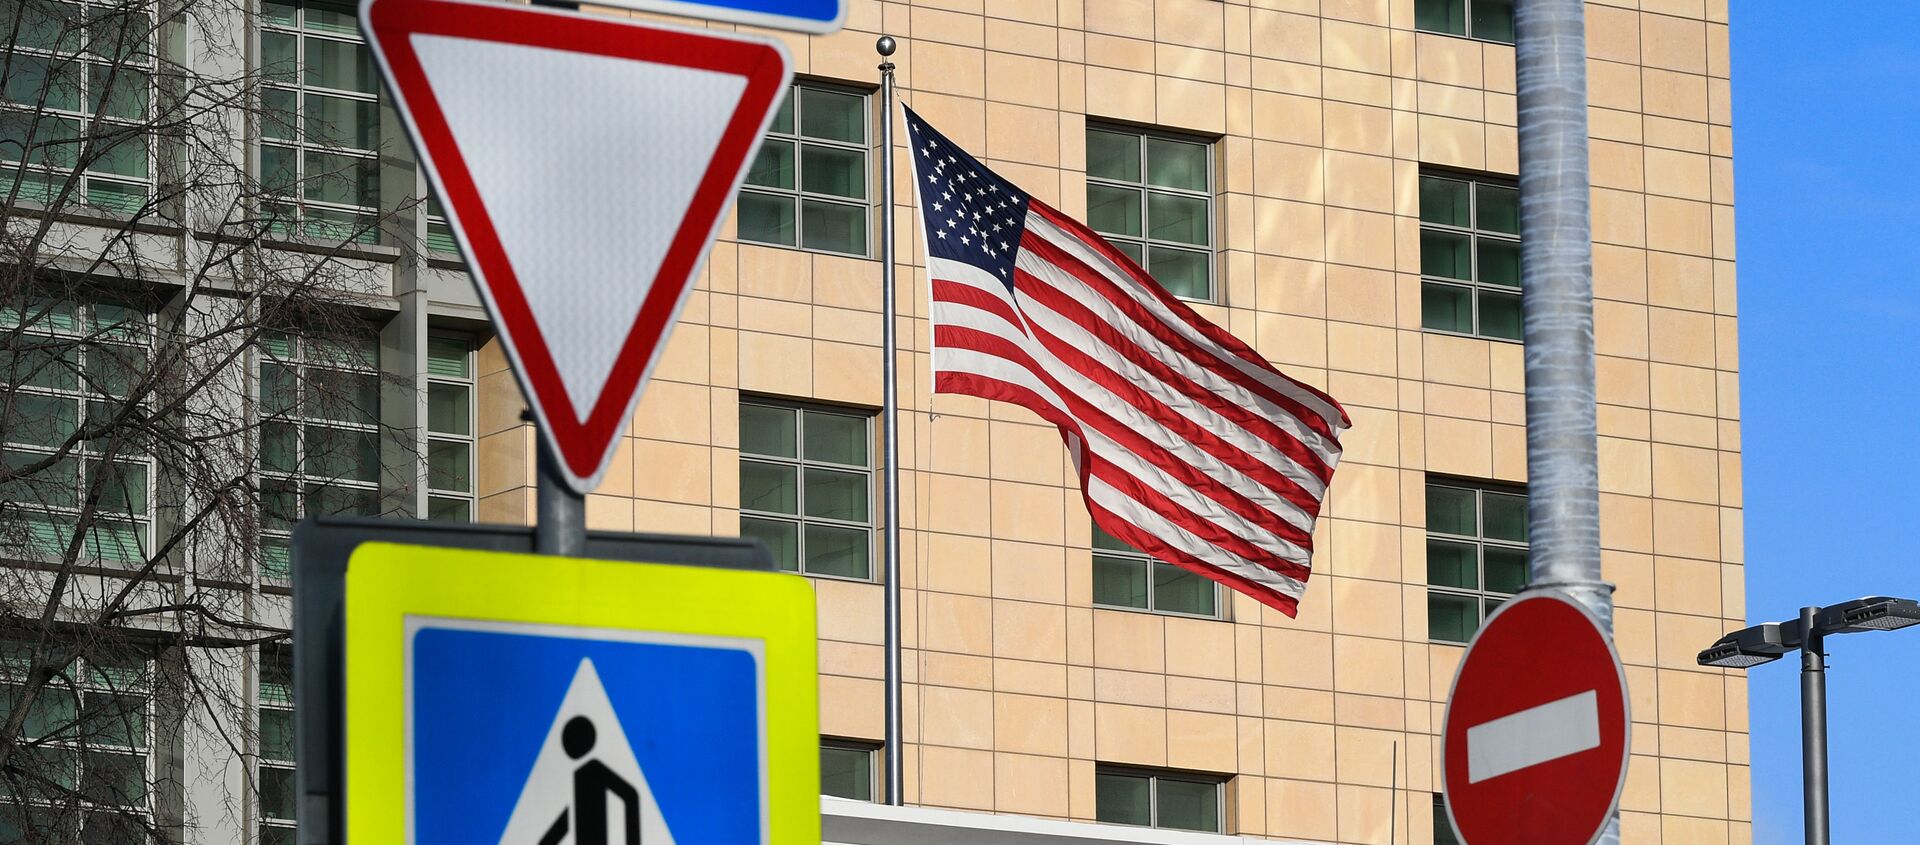 Государственный флаг США у американского посольства в Москве. - Sputnik Азербайджан, 1920, 01.05.2021